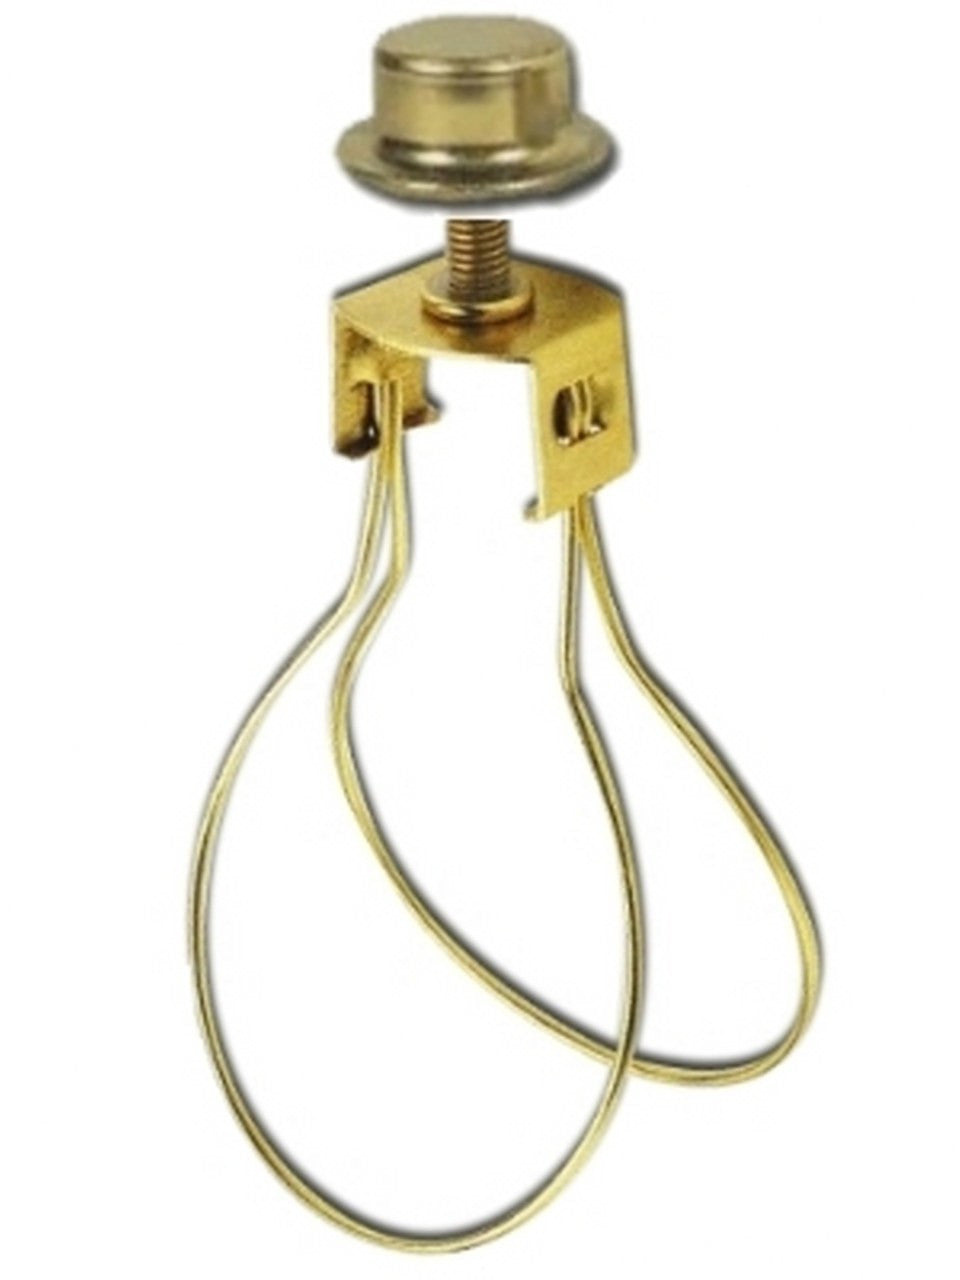 UpgradeLightsÌÎå«Ì´åÂ Lamp Shade Bulb Clip Adapter Clip Bulb Onto Shade with Attaching Finial